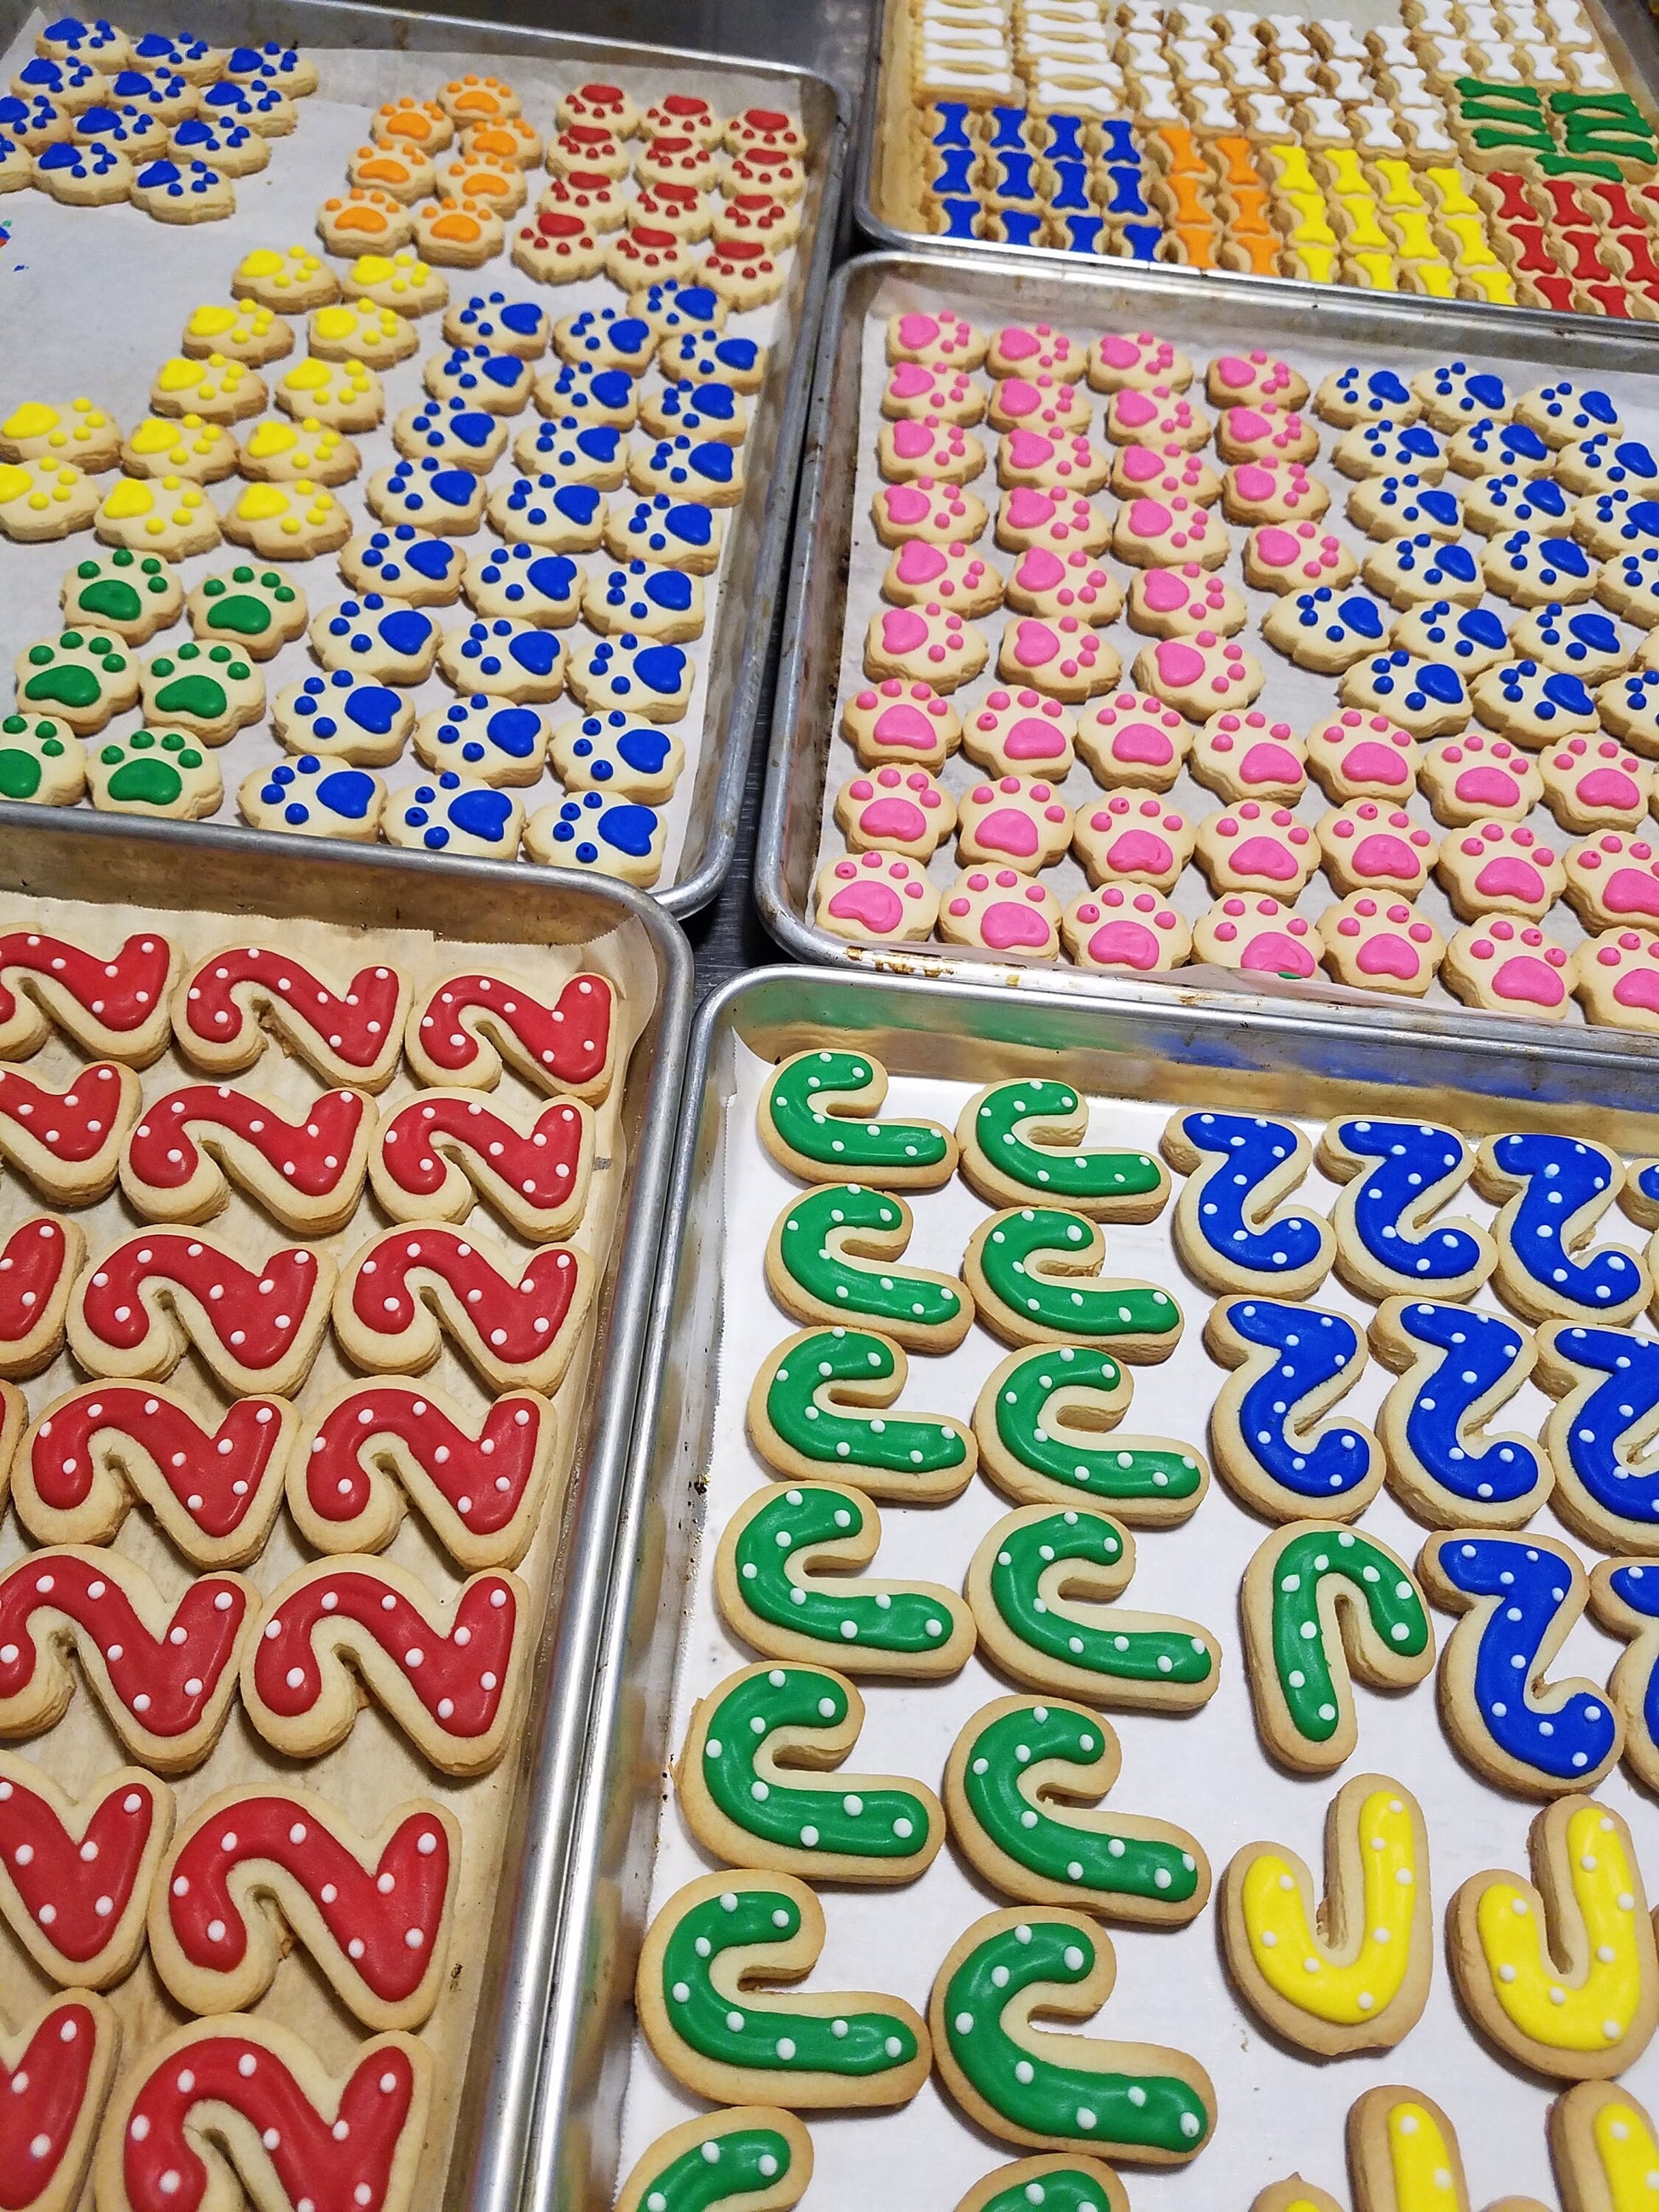 Sample Cookies